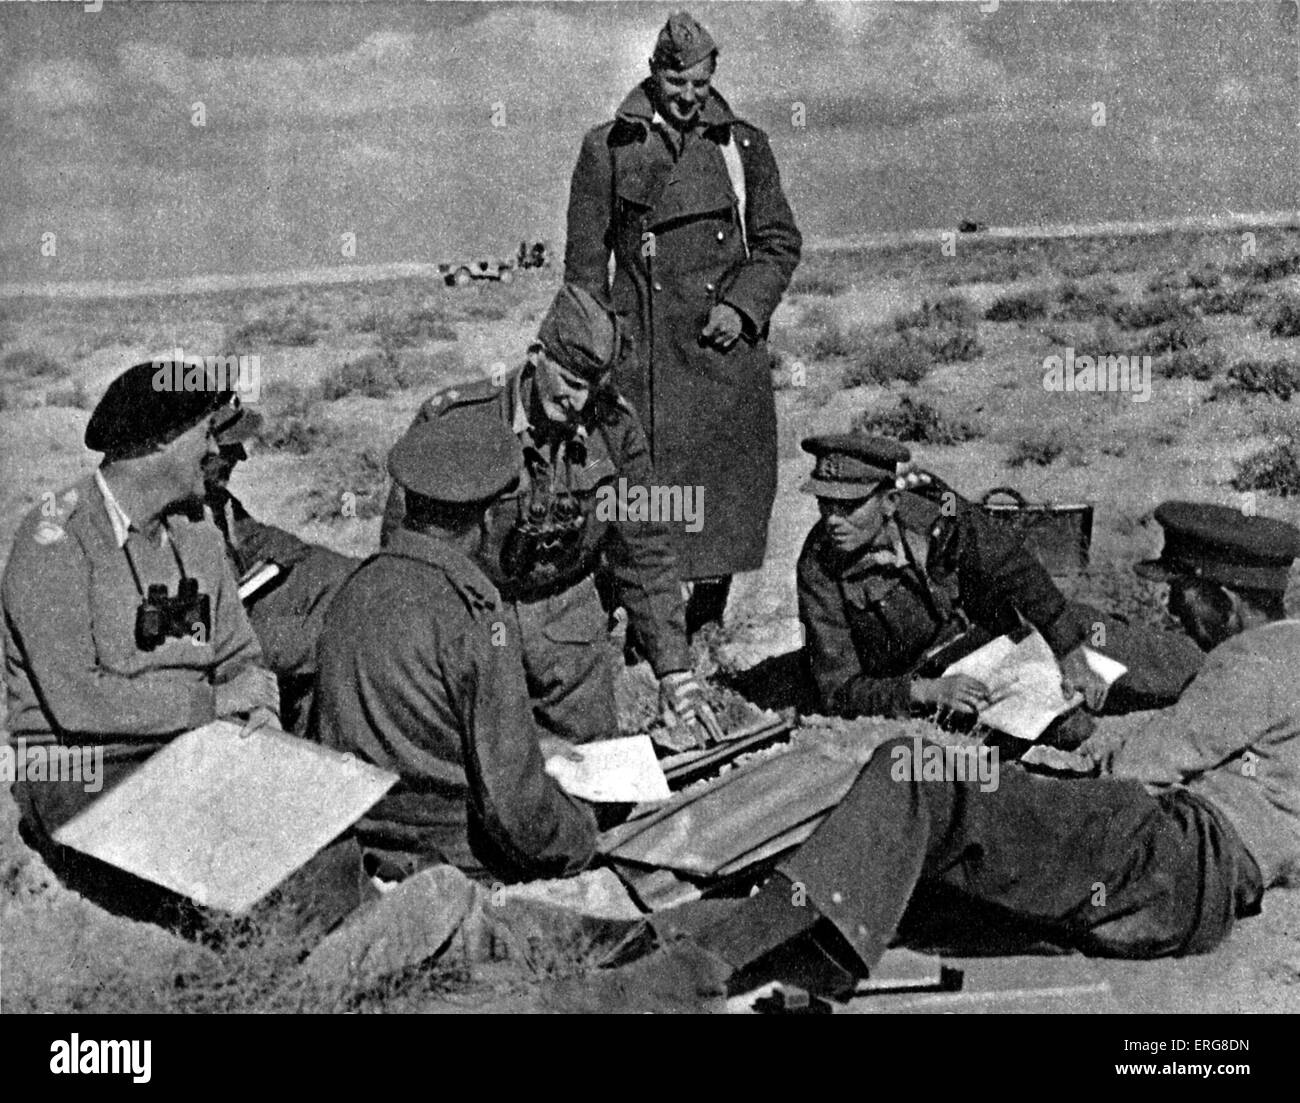 L'Ottava Armata - la seconda guerra mondiale.Battaglia di Sidi Rezegh, 22 novembre 1941, 4° giorno di offensiva. Il brigadiere dà gli ordini come mappe e i piani sono sparsi sulla sabbia. Foto Stock